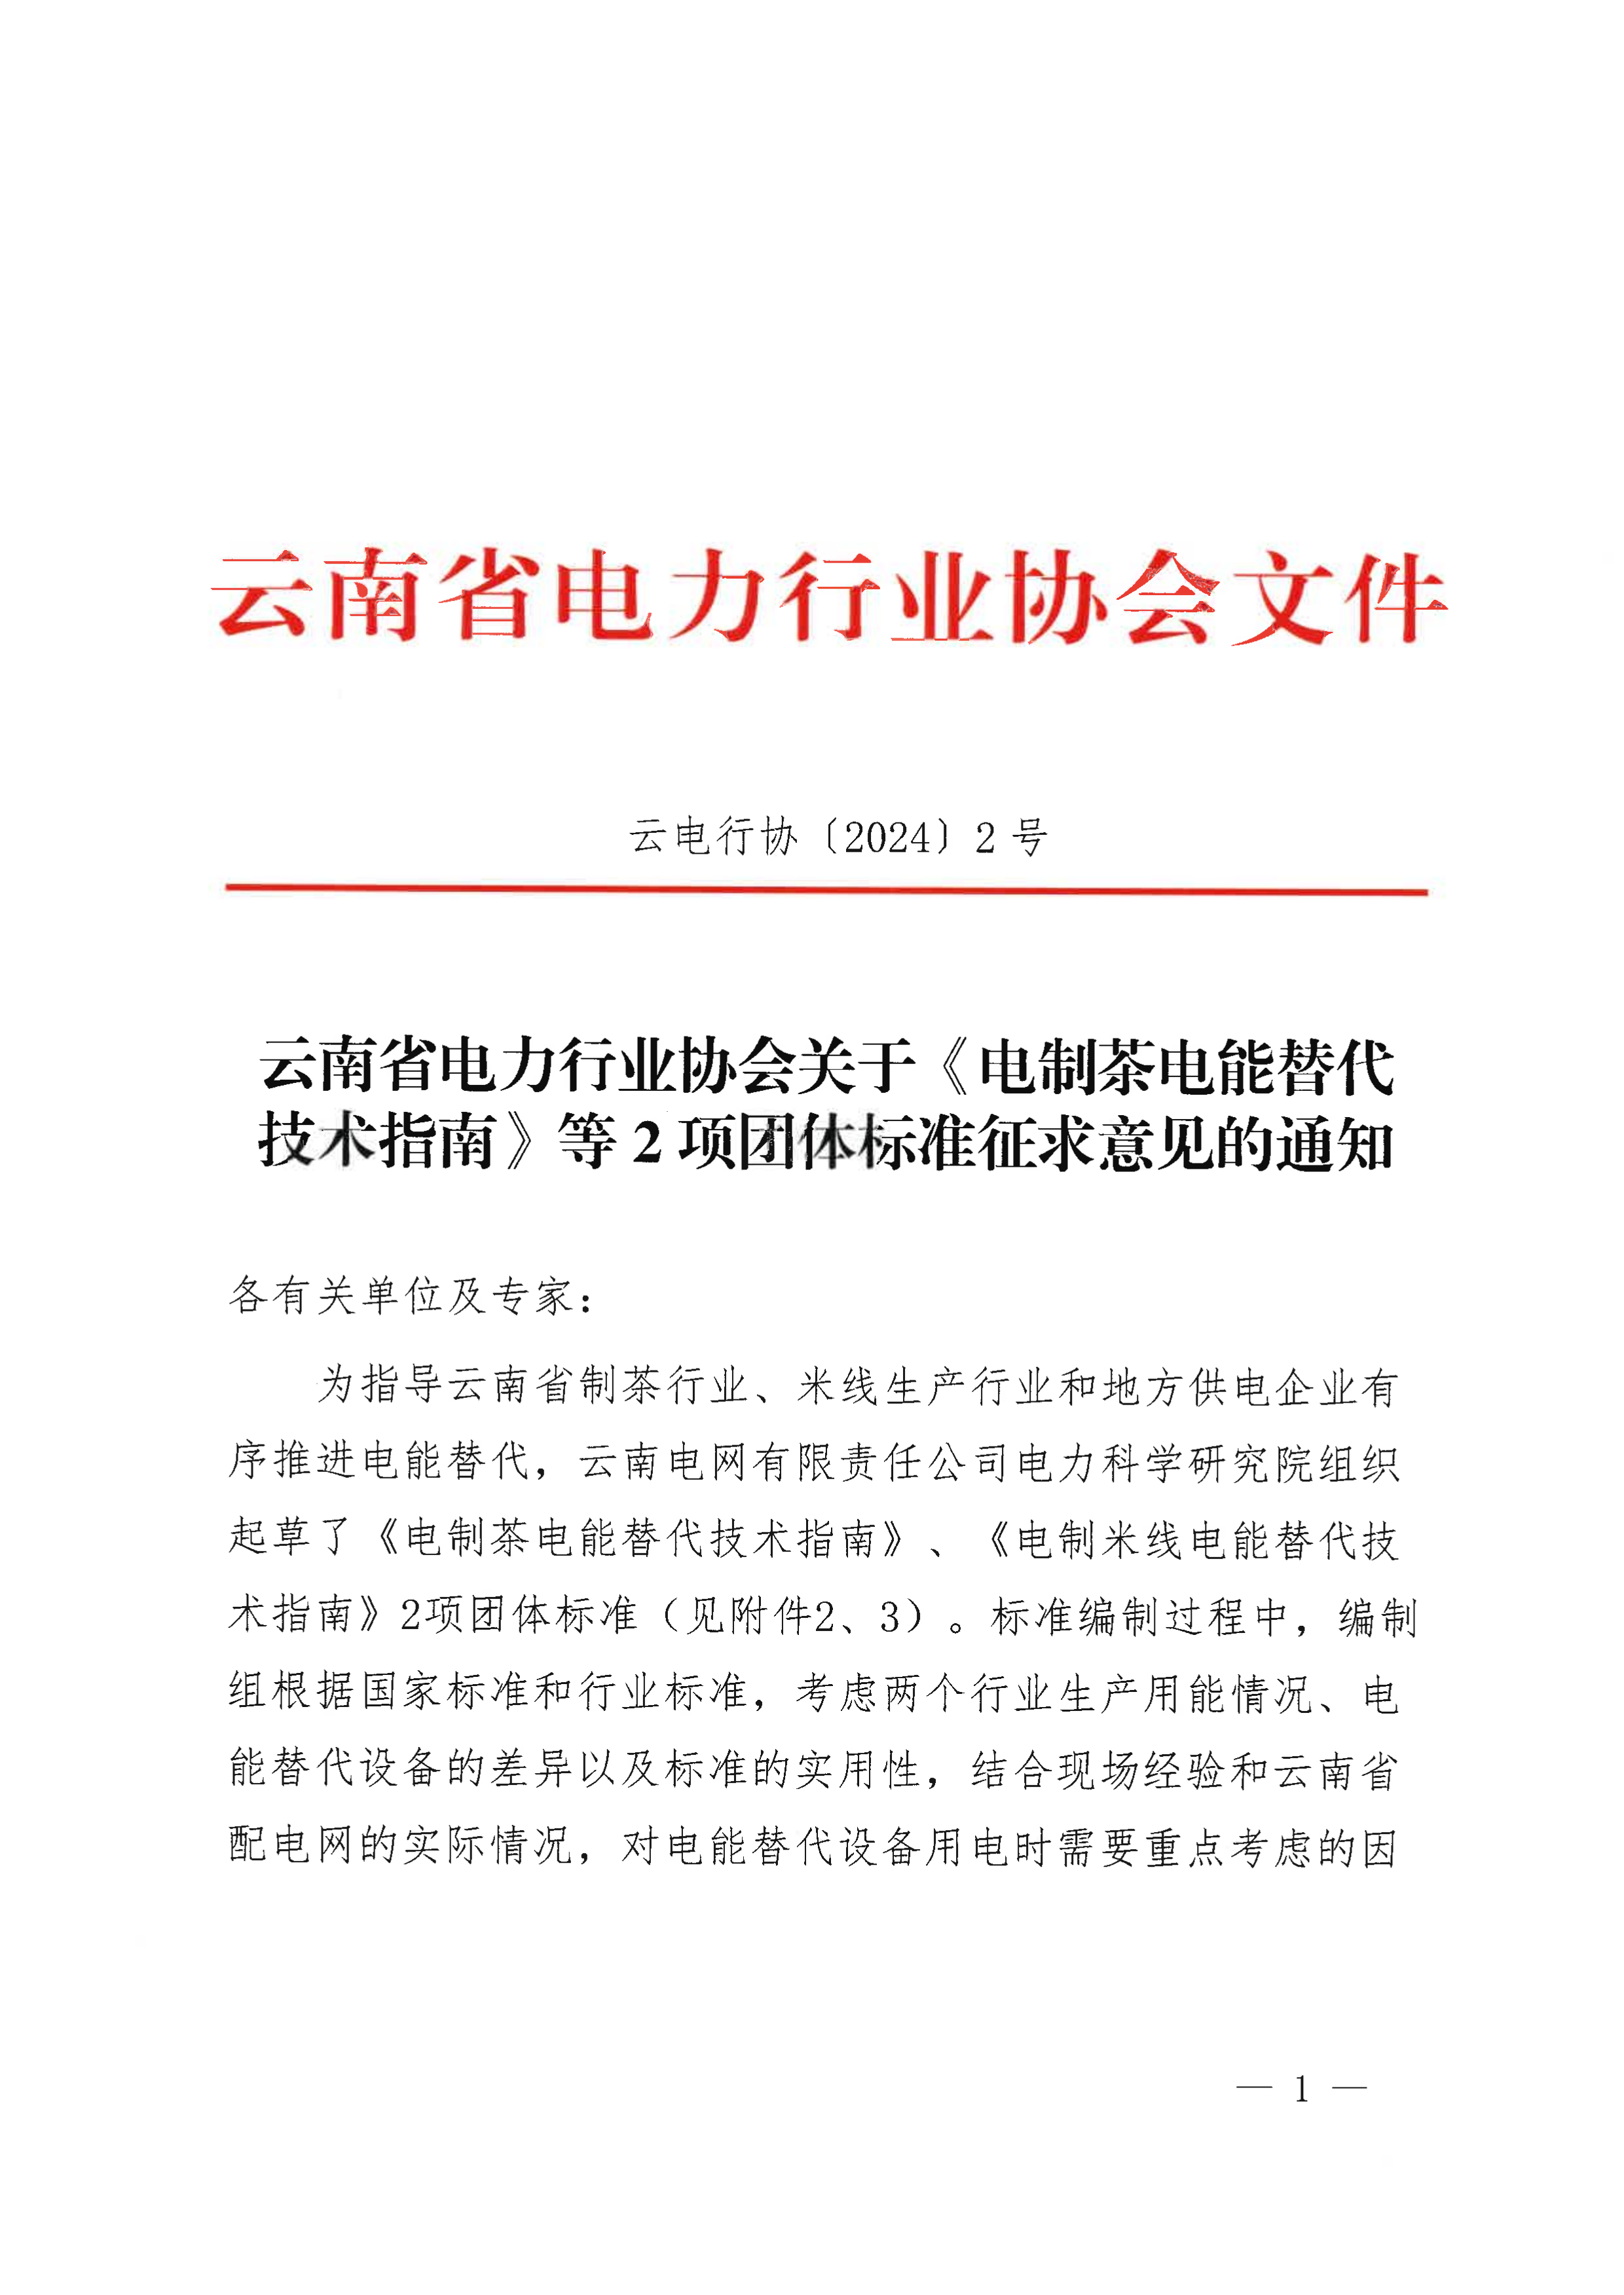 云南省电力行业协会关于《电制茶电能替代技术指南》等2项团体标准征求意见的通知_1.png